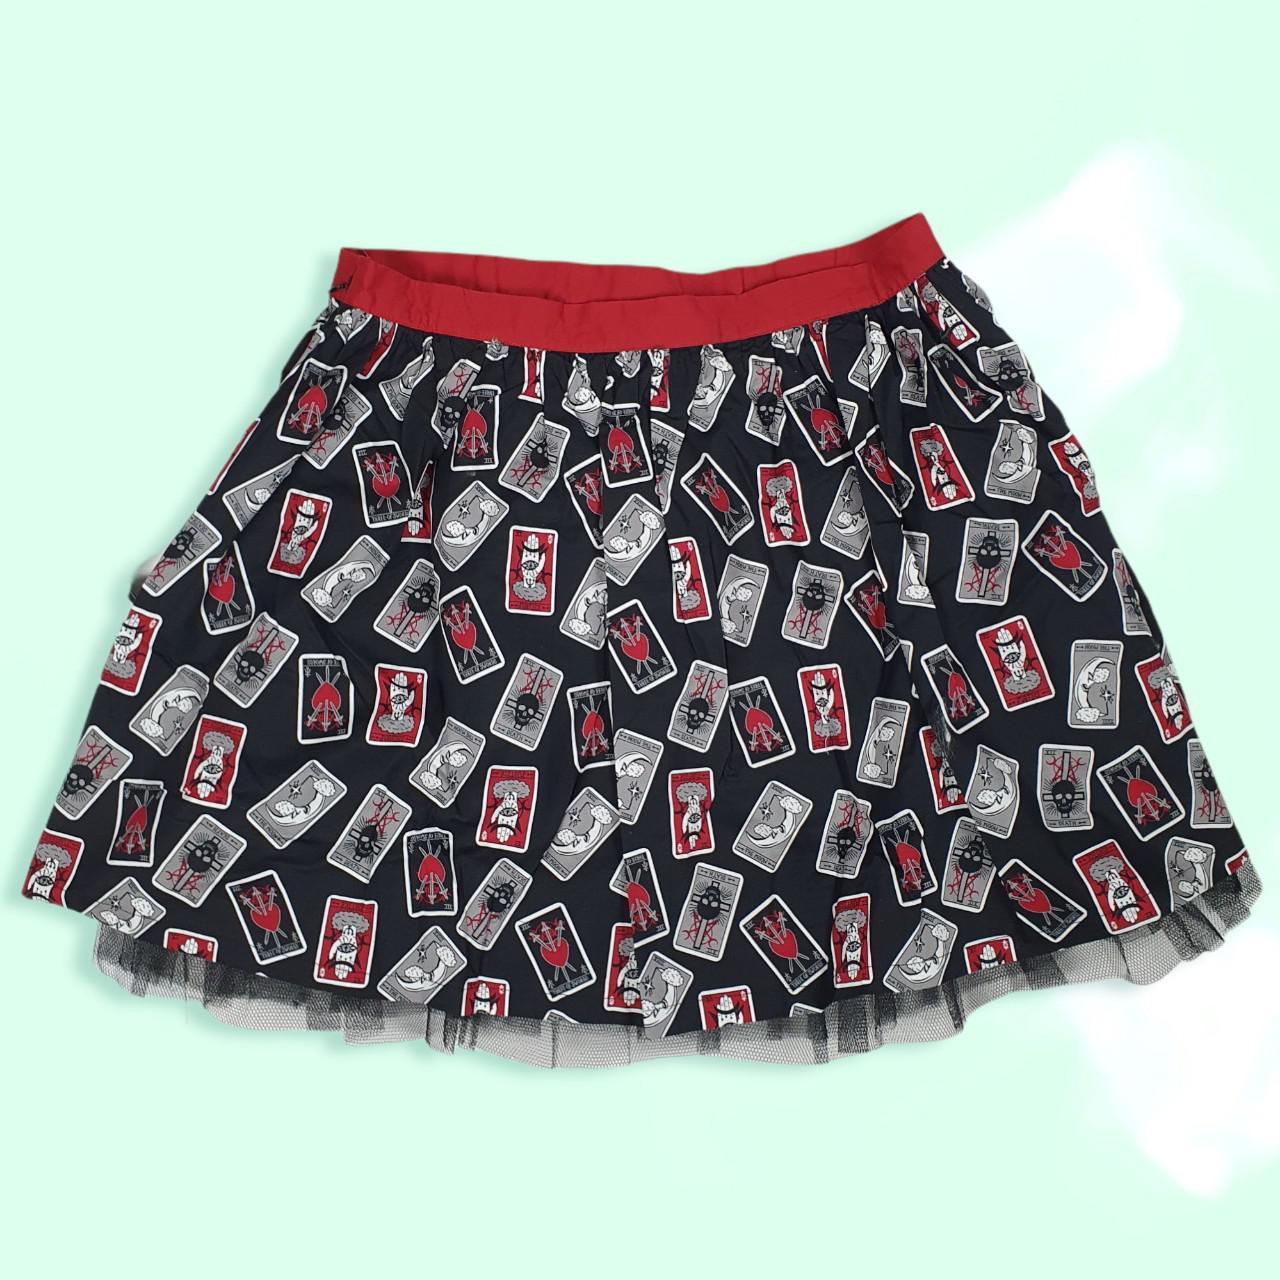 Product Image 2 - .
💀❤️Tarot Cards Tutu Skirt ❤️💀

💀